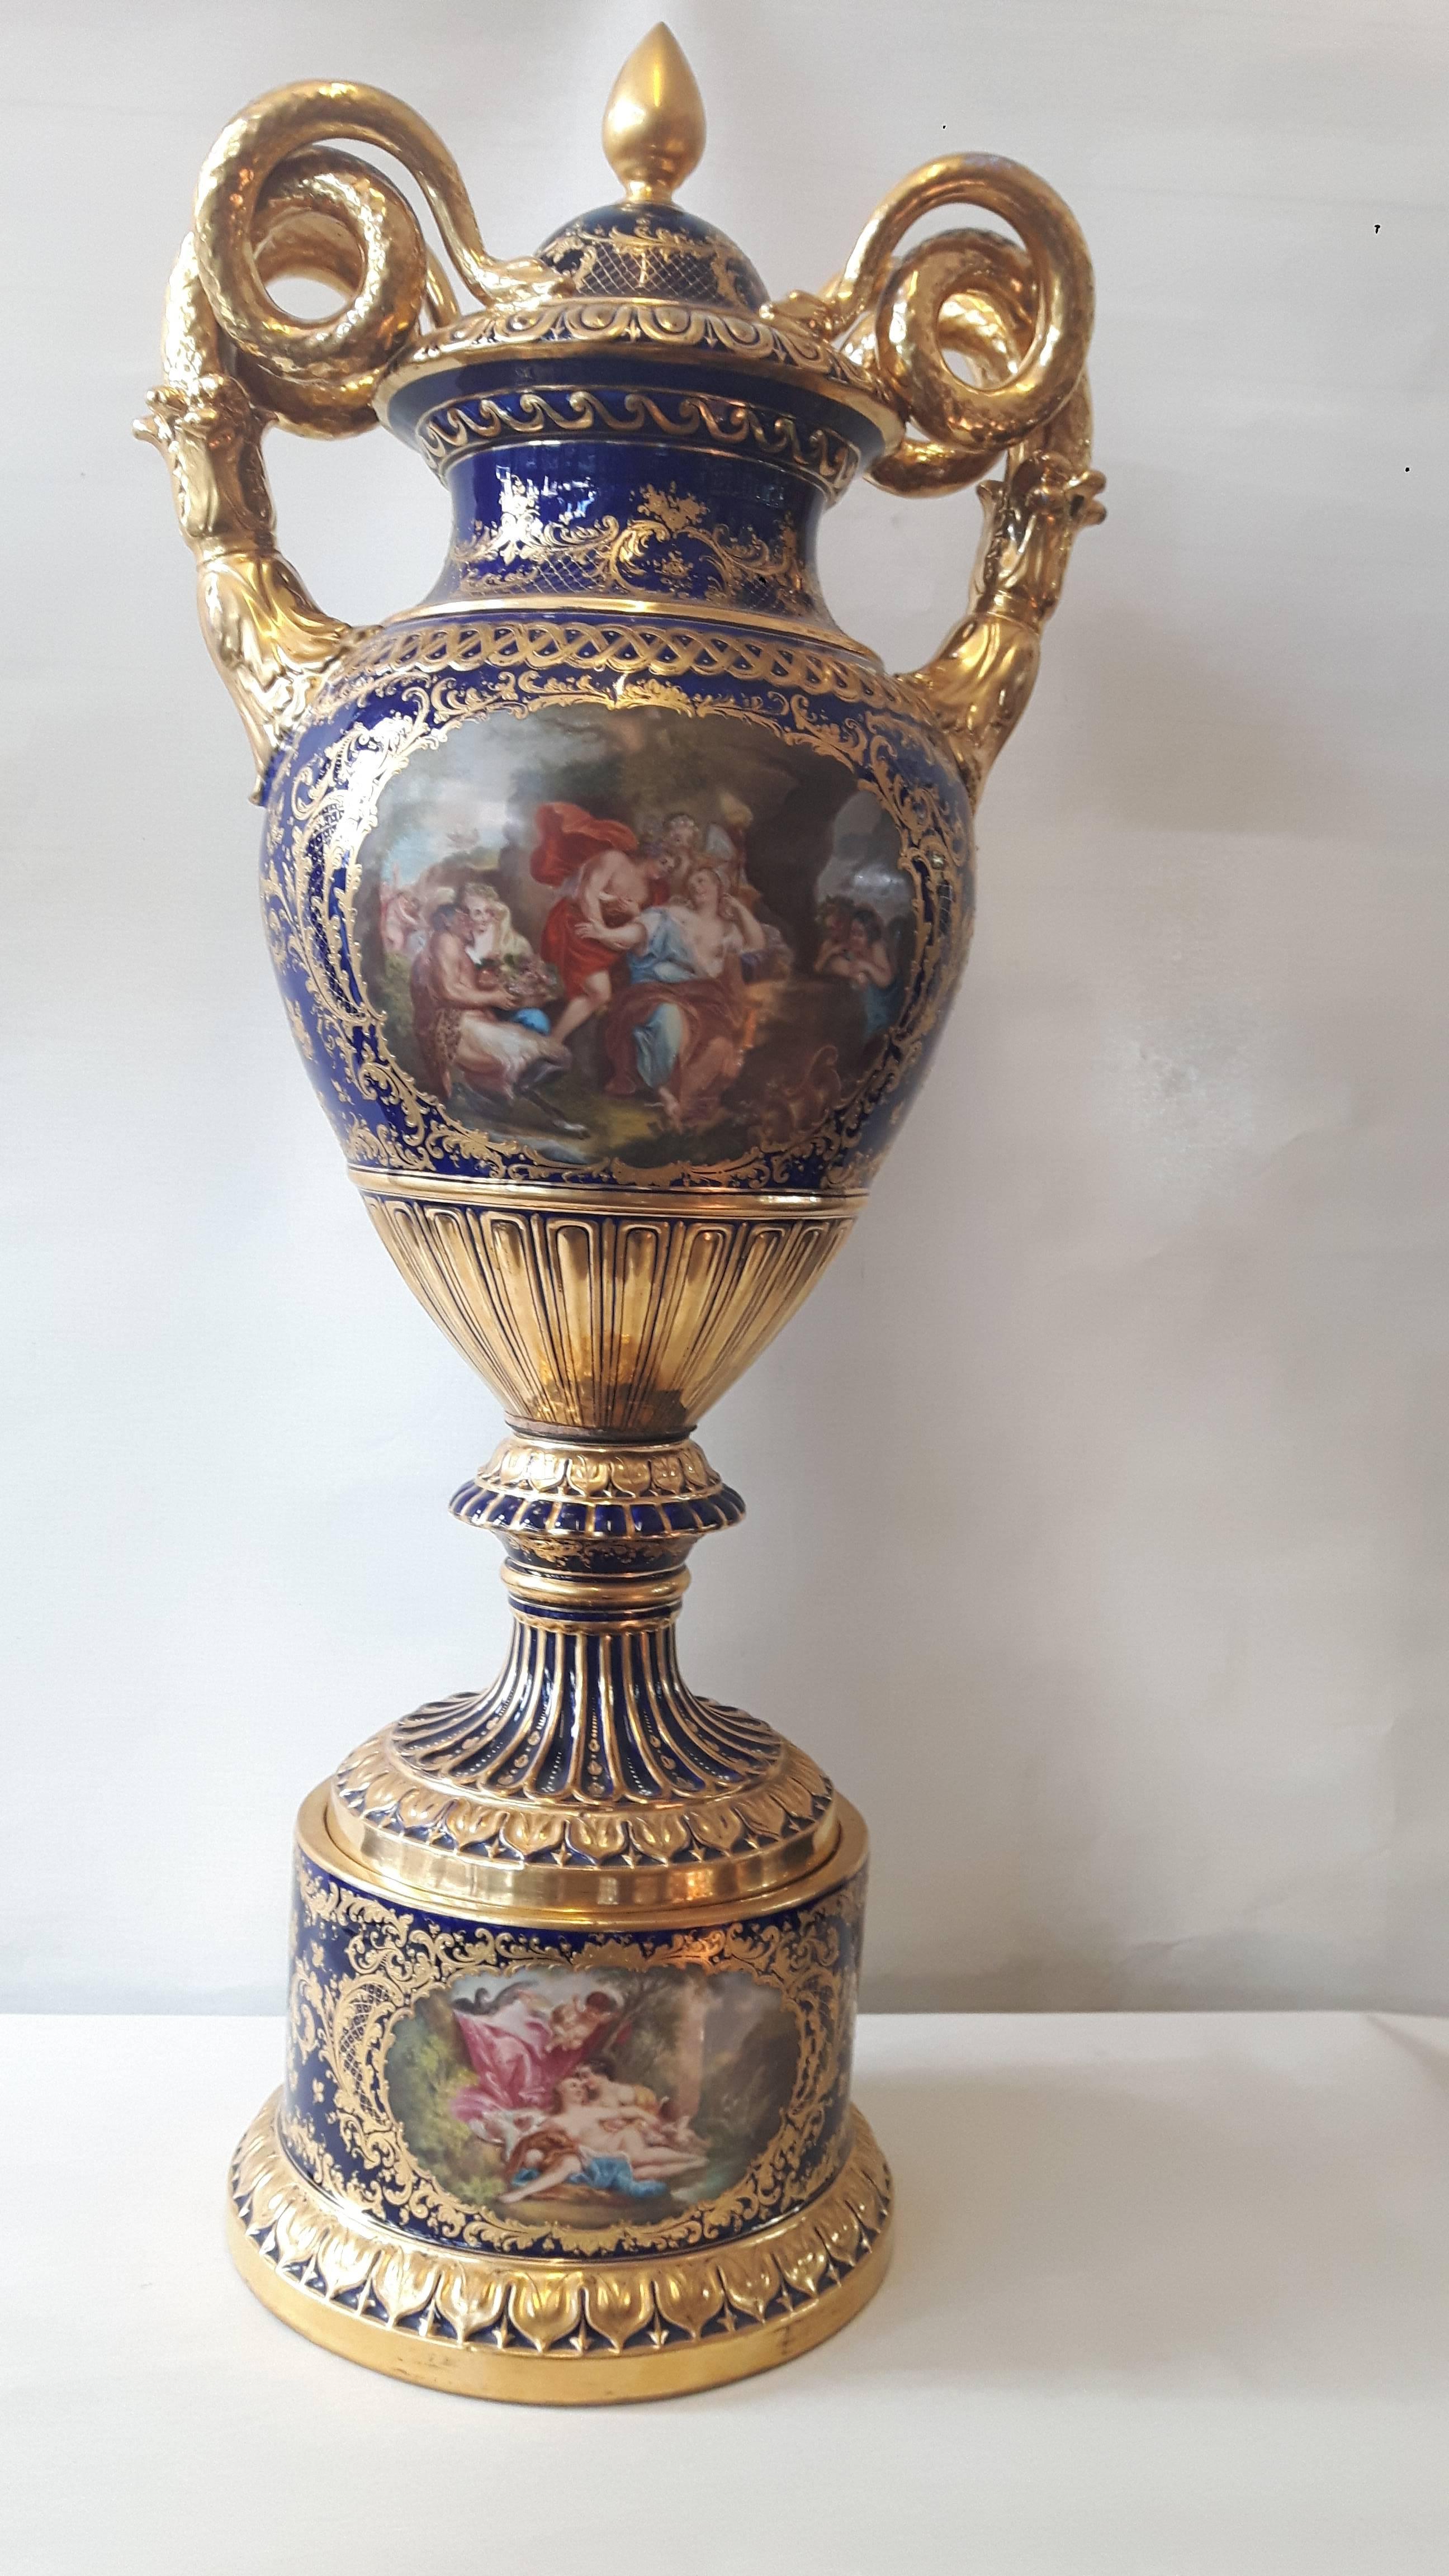 Eine beeindruckende Wiener Vase im kaiserlichen Stil, handbemalt mit Kartuschen mit Szenen aus der griechischen Mythologie. Die Griffe aus vergoldetem Porzellan haben die Form von gewundenen Schlangen und der Korpus ist kunstvoll mit vergoldeten